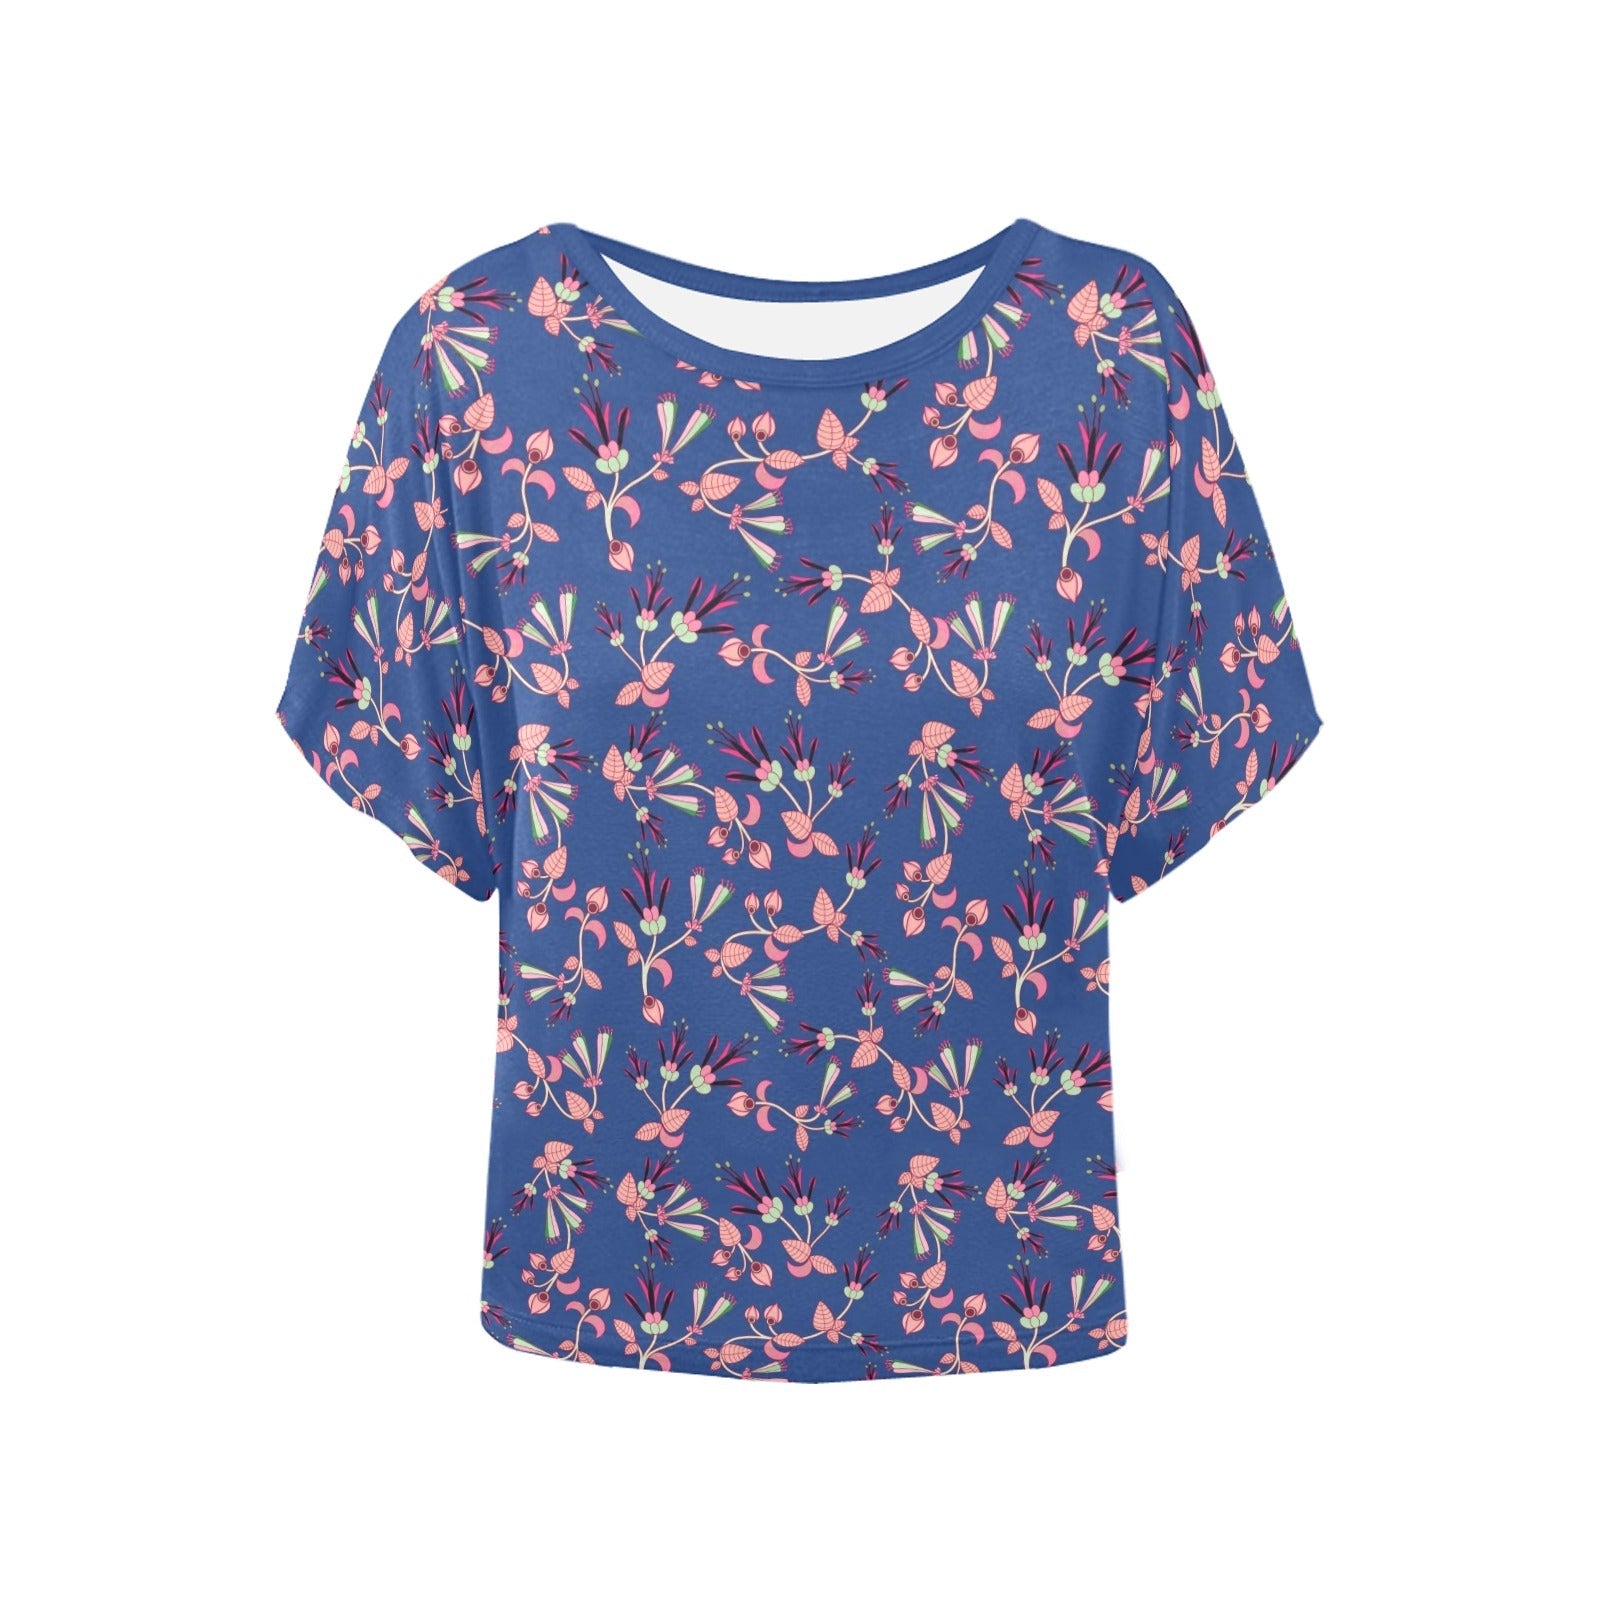 Swift Floral Peach Blue Women's Batwing-Sleeved Blouse T shirt (Model T44) Women's Batwing-Sleeved Blouse T shirt (T44) e-joyer 